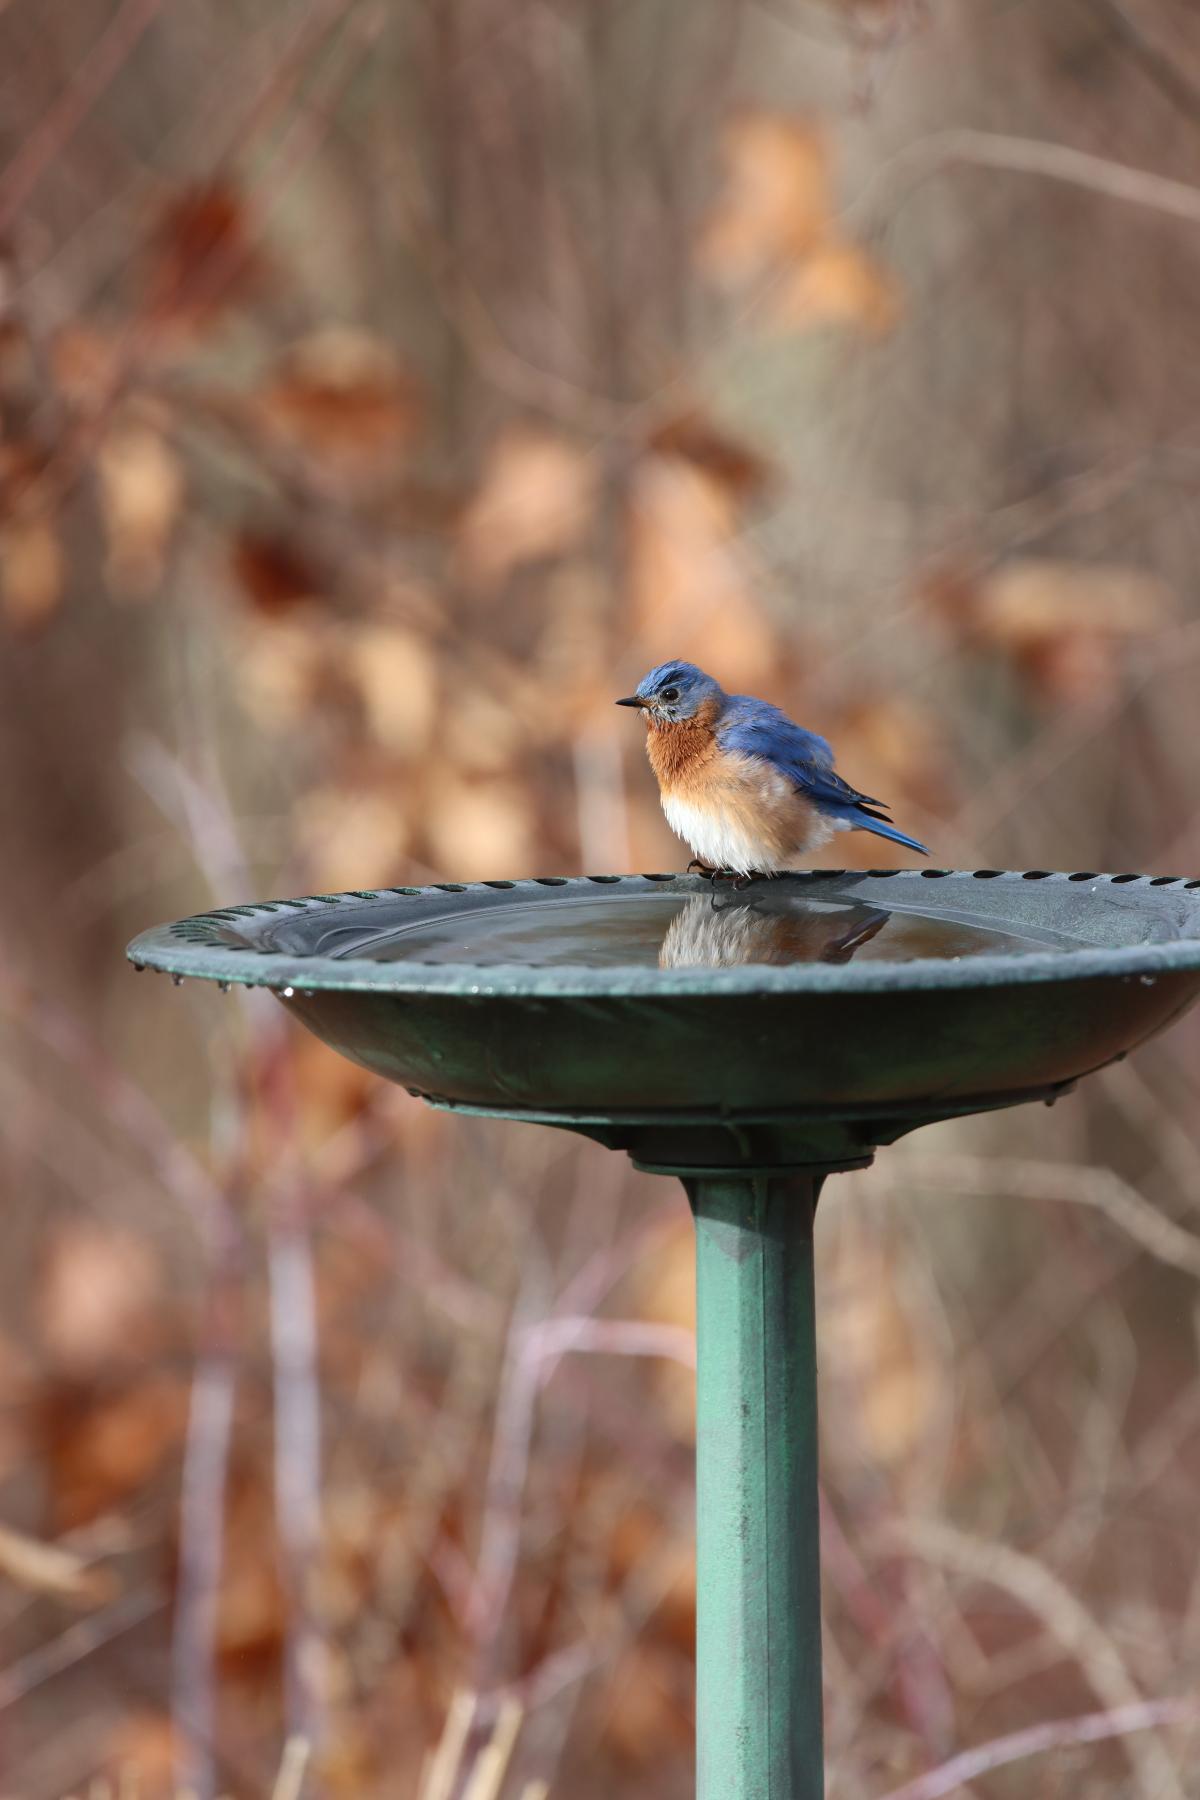 A bluebird at a bird bath